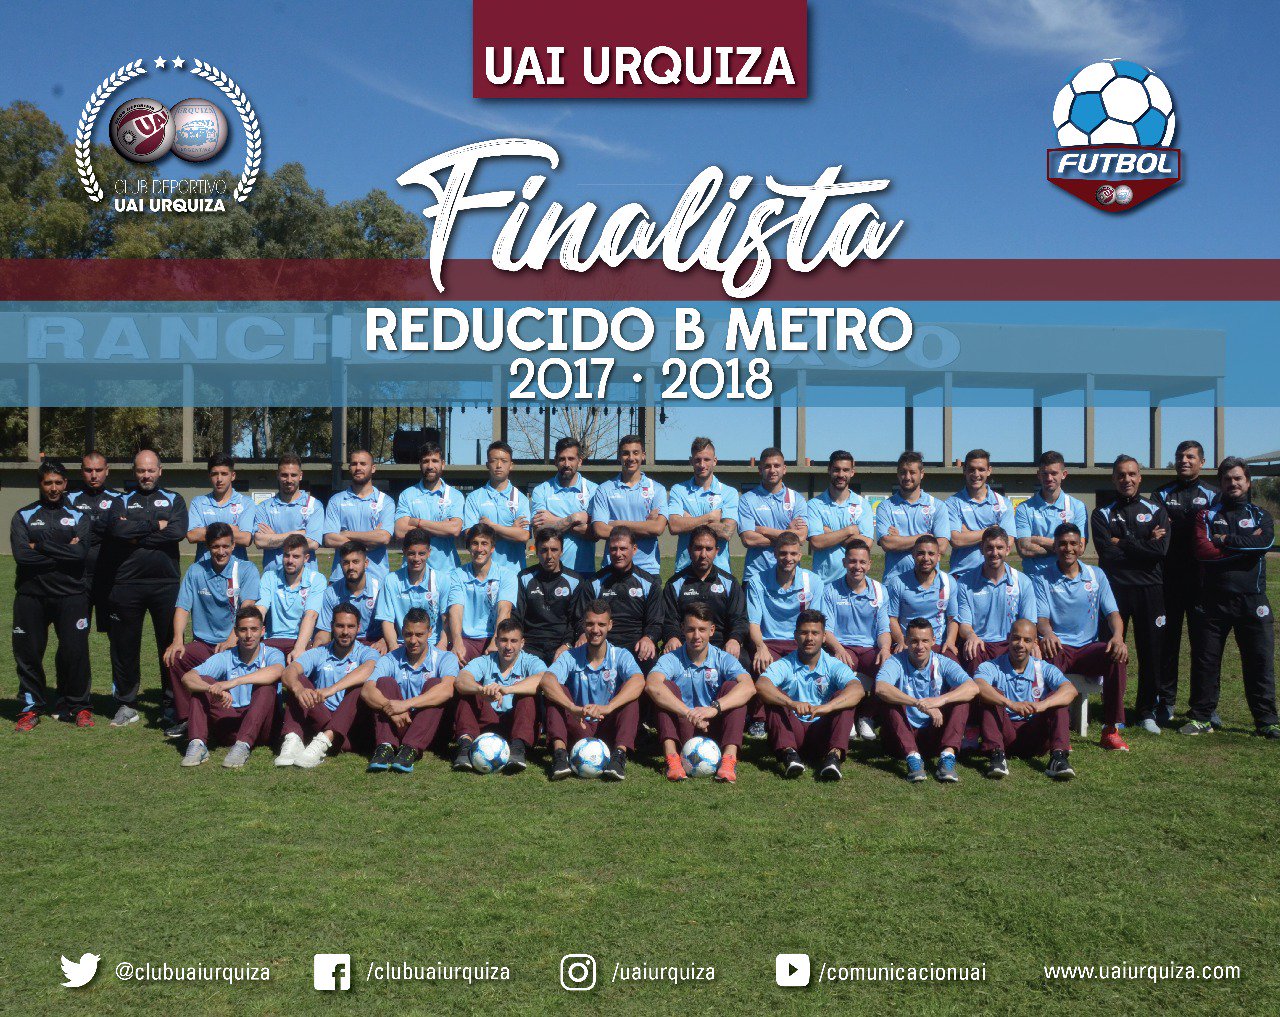 UAI Urquiza (@clubuaiurquiza) / X